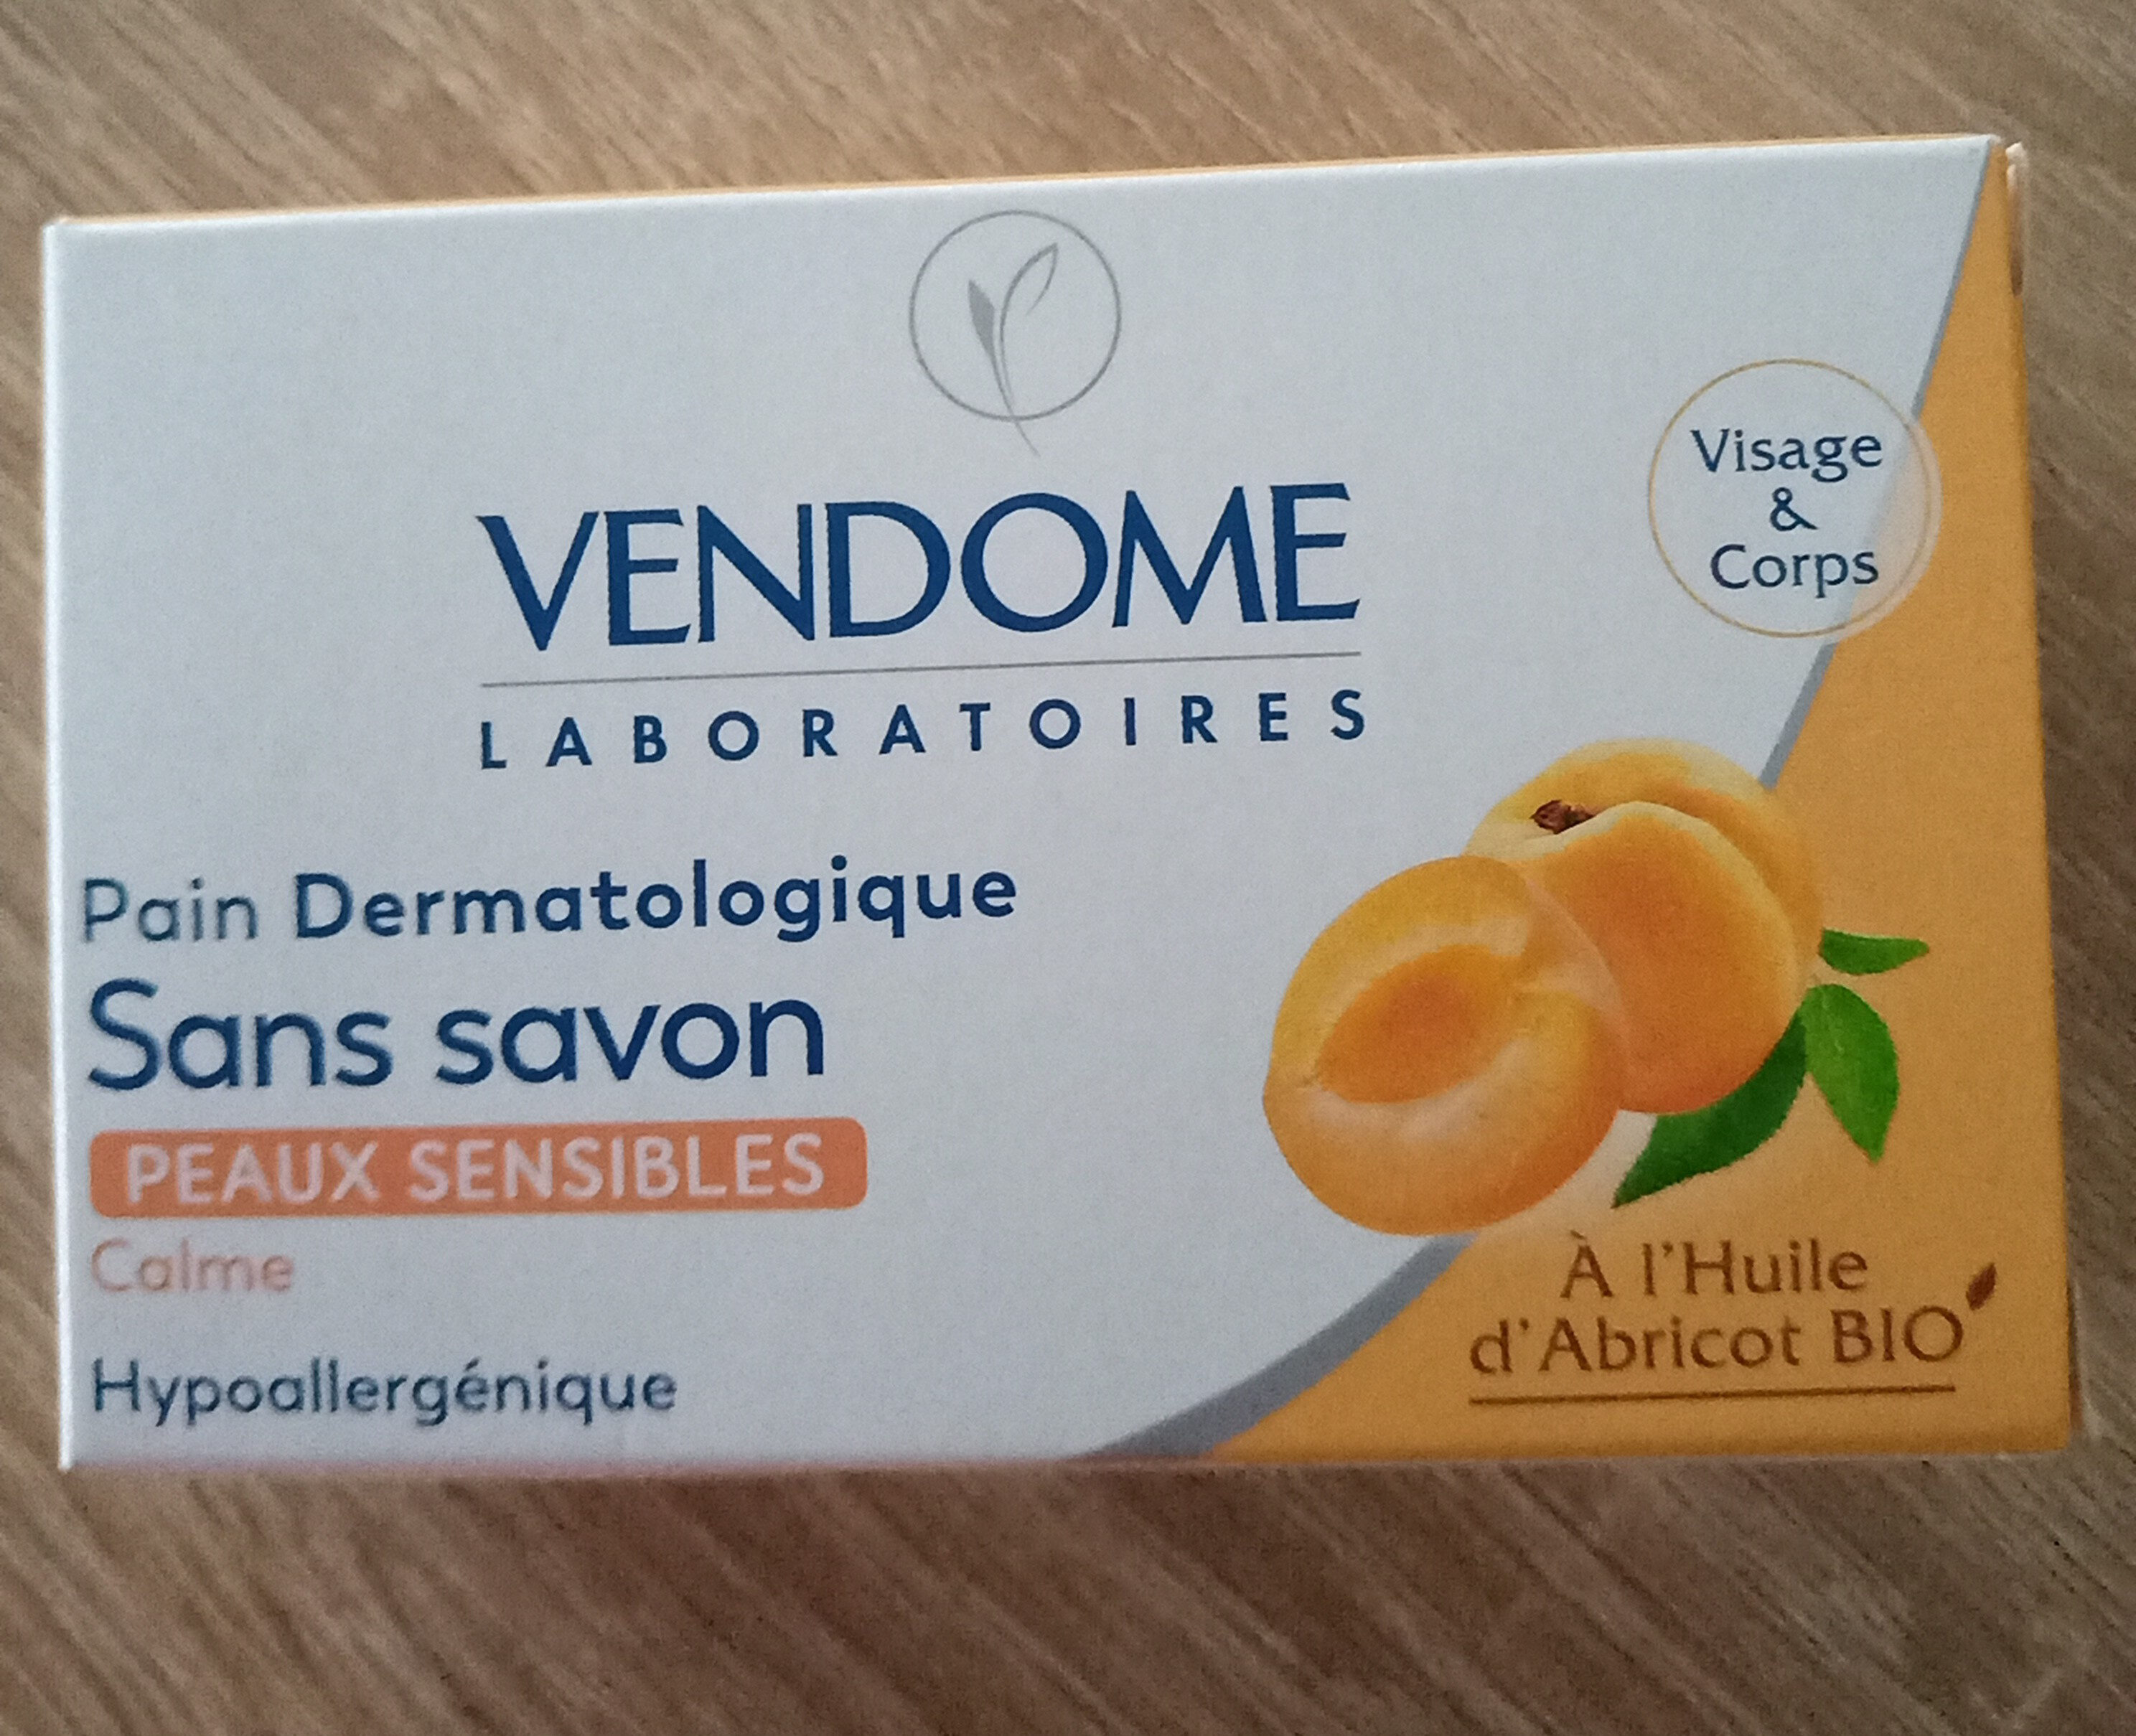 pain dermatologique sans savon - Product - fr